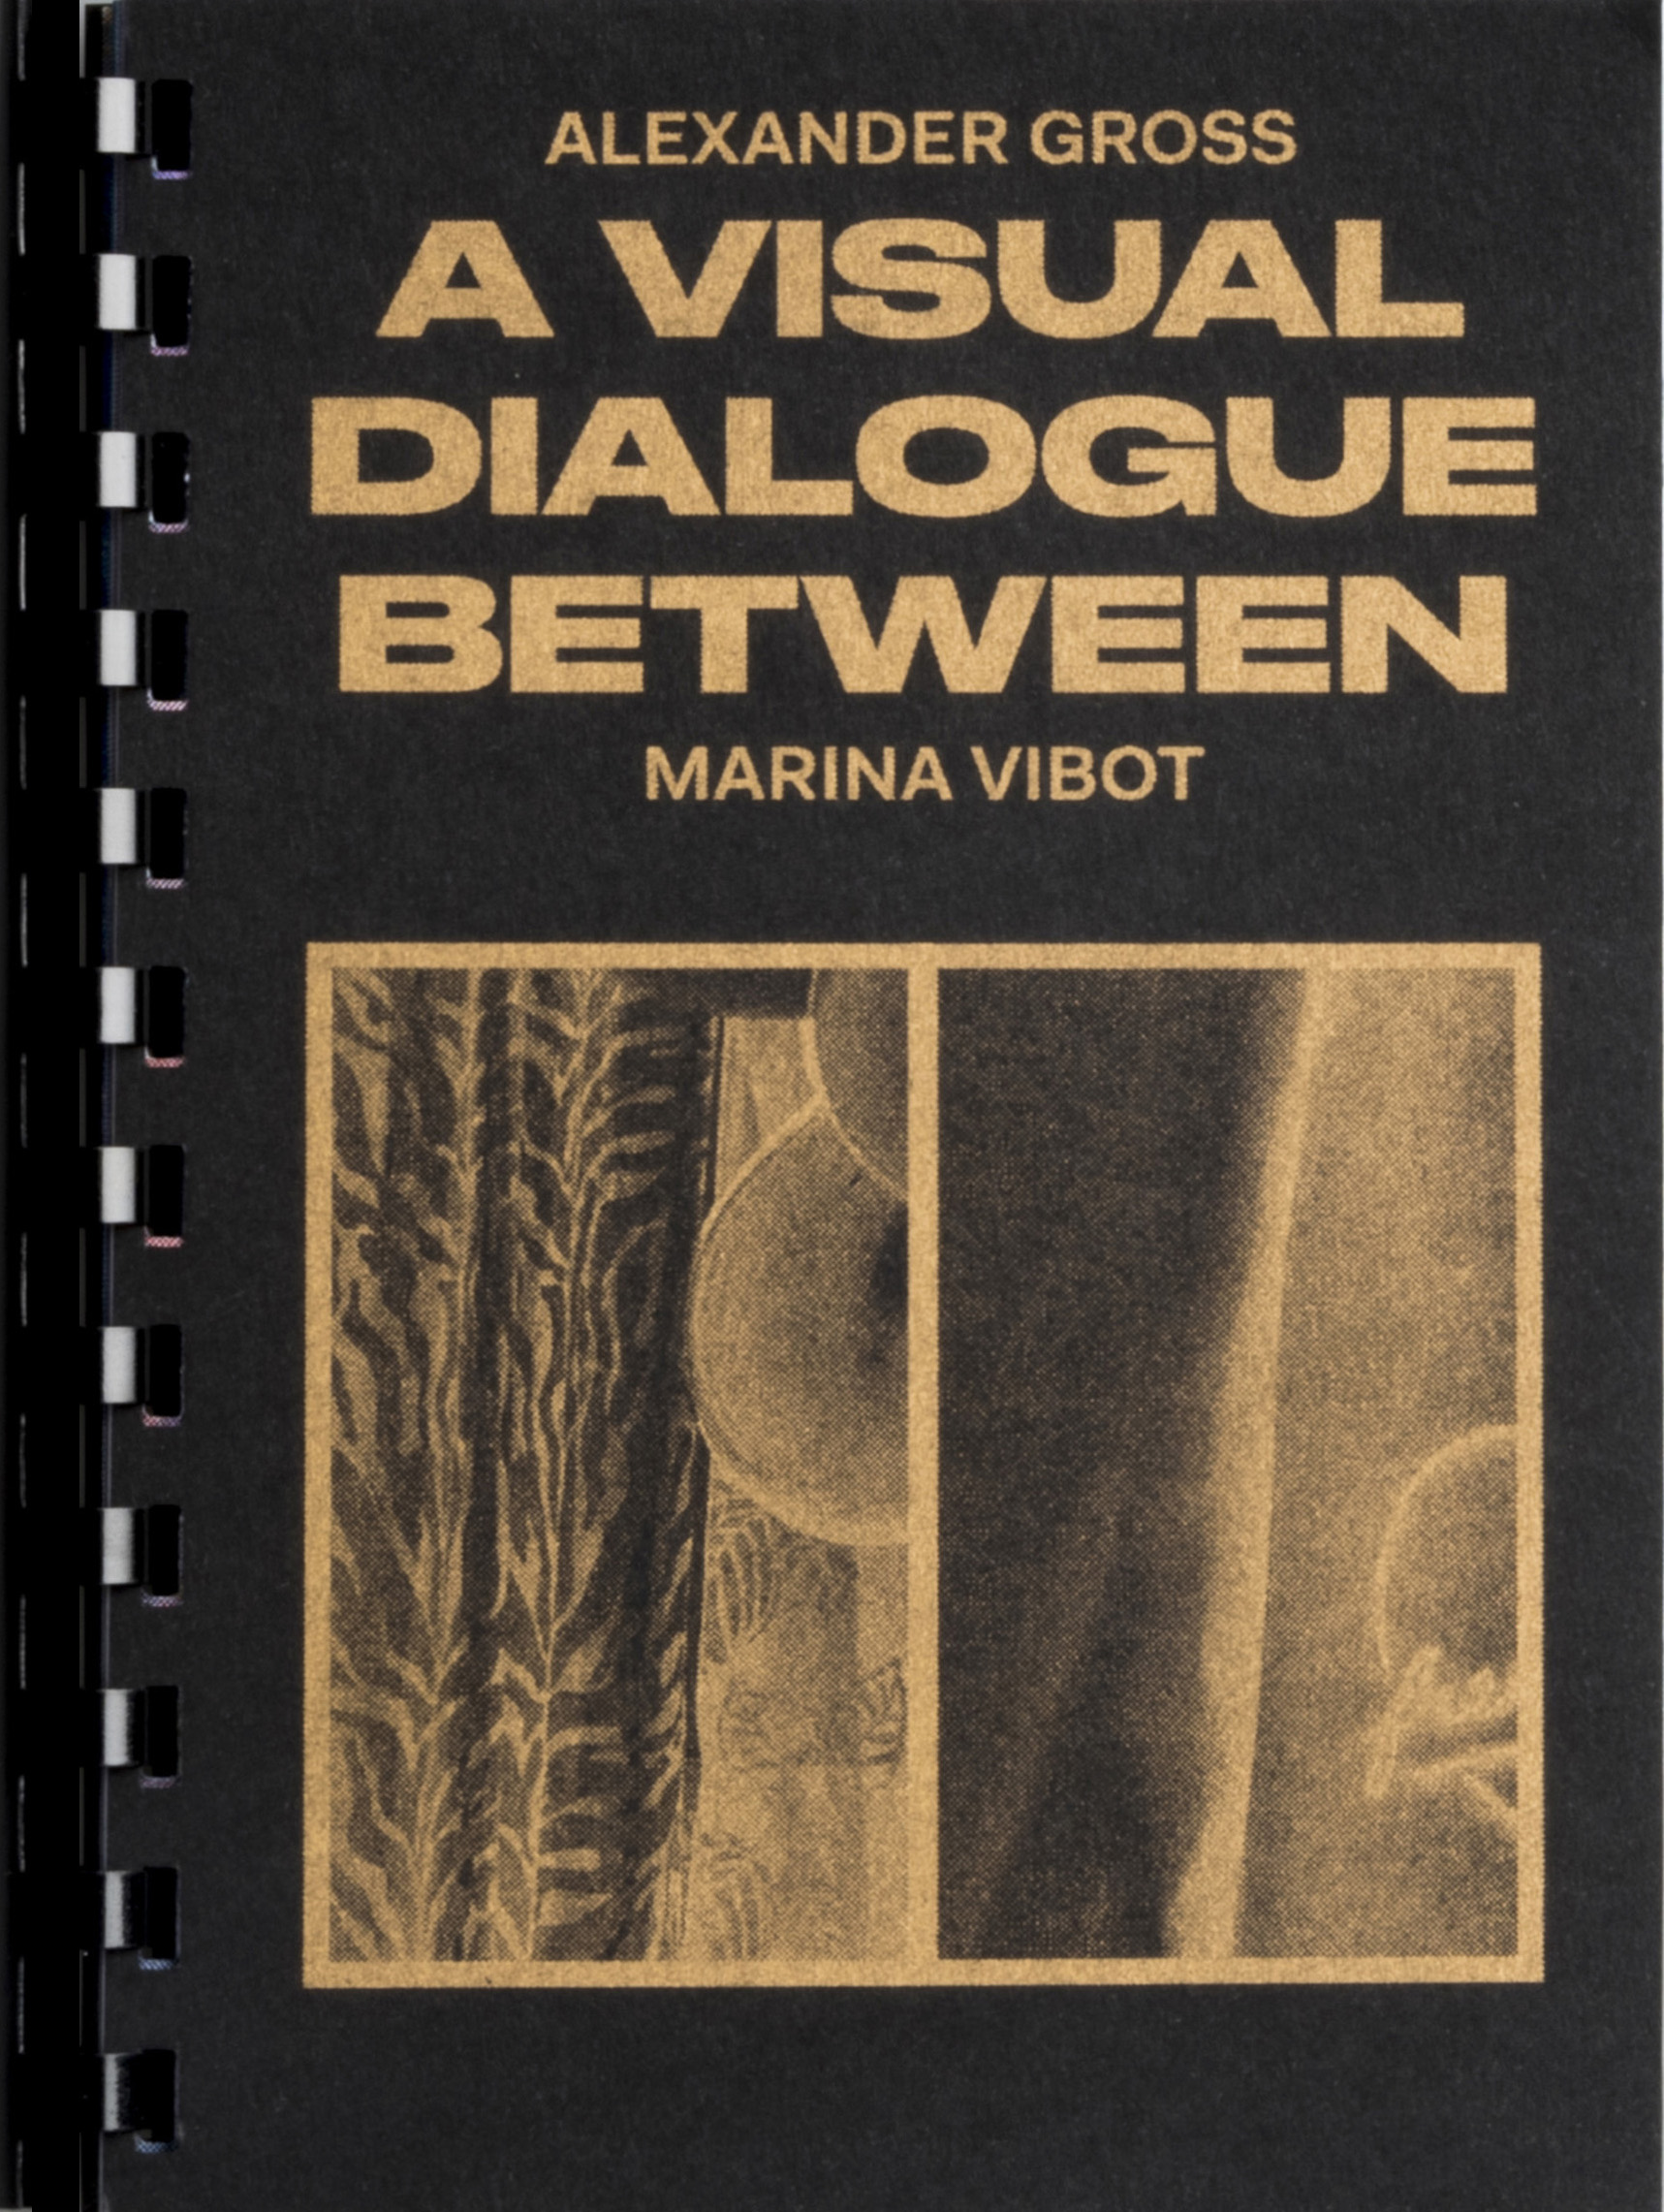 A visual dialogue between Alexander Gross & Marina Vibot